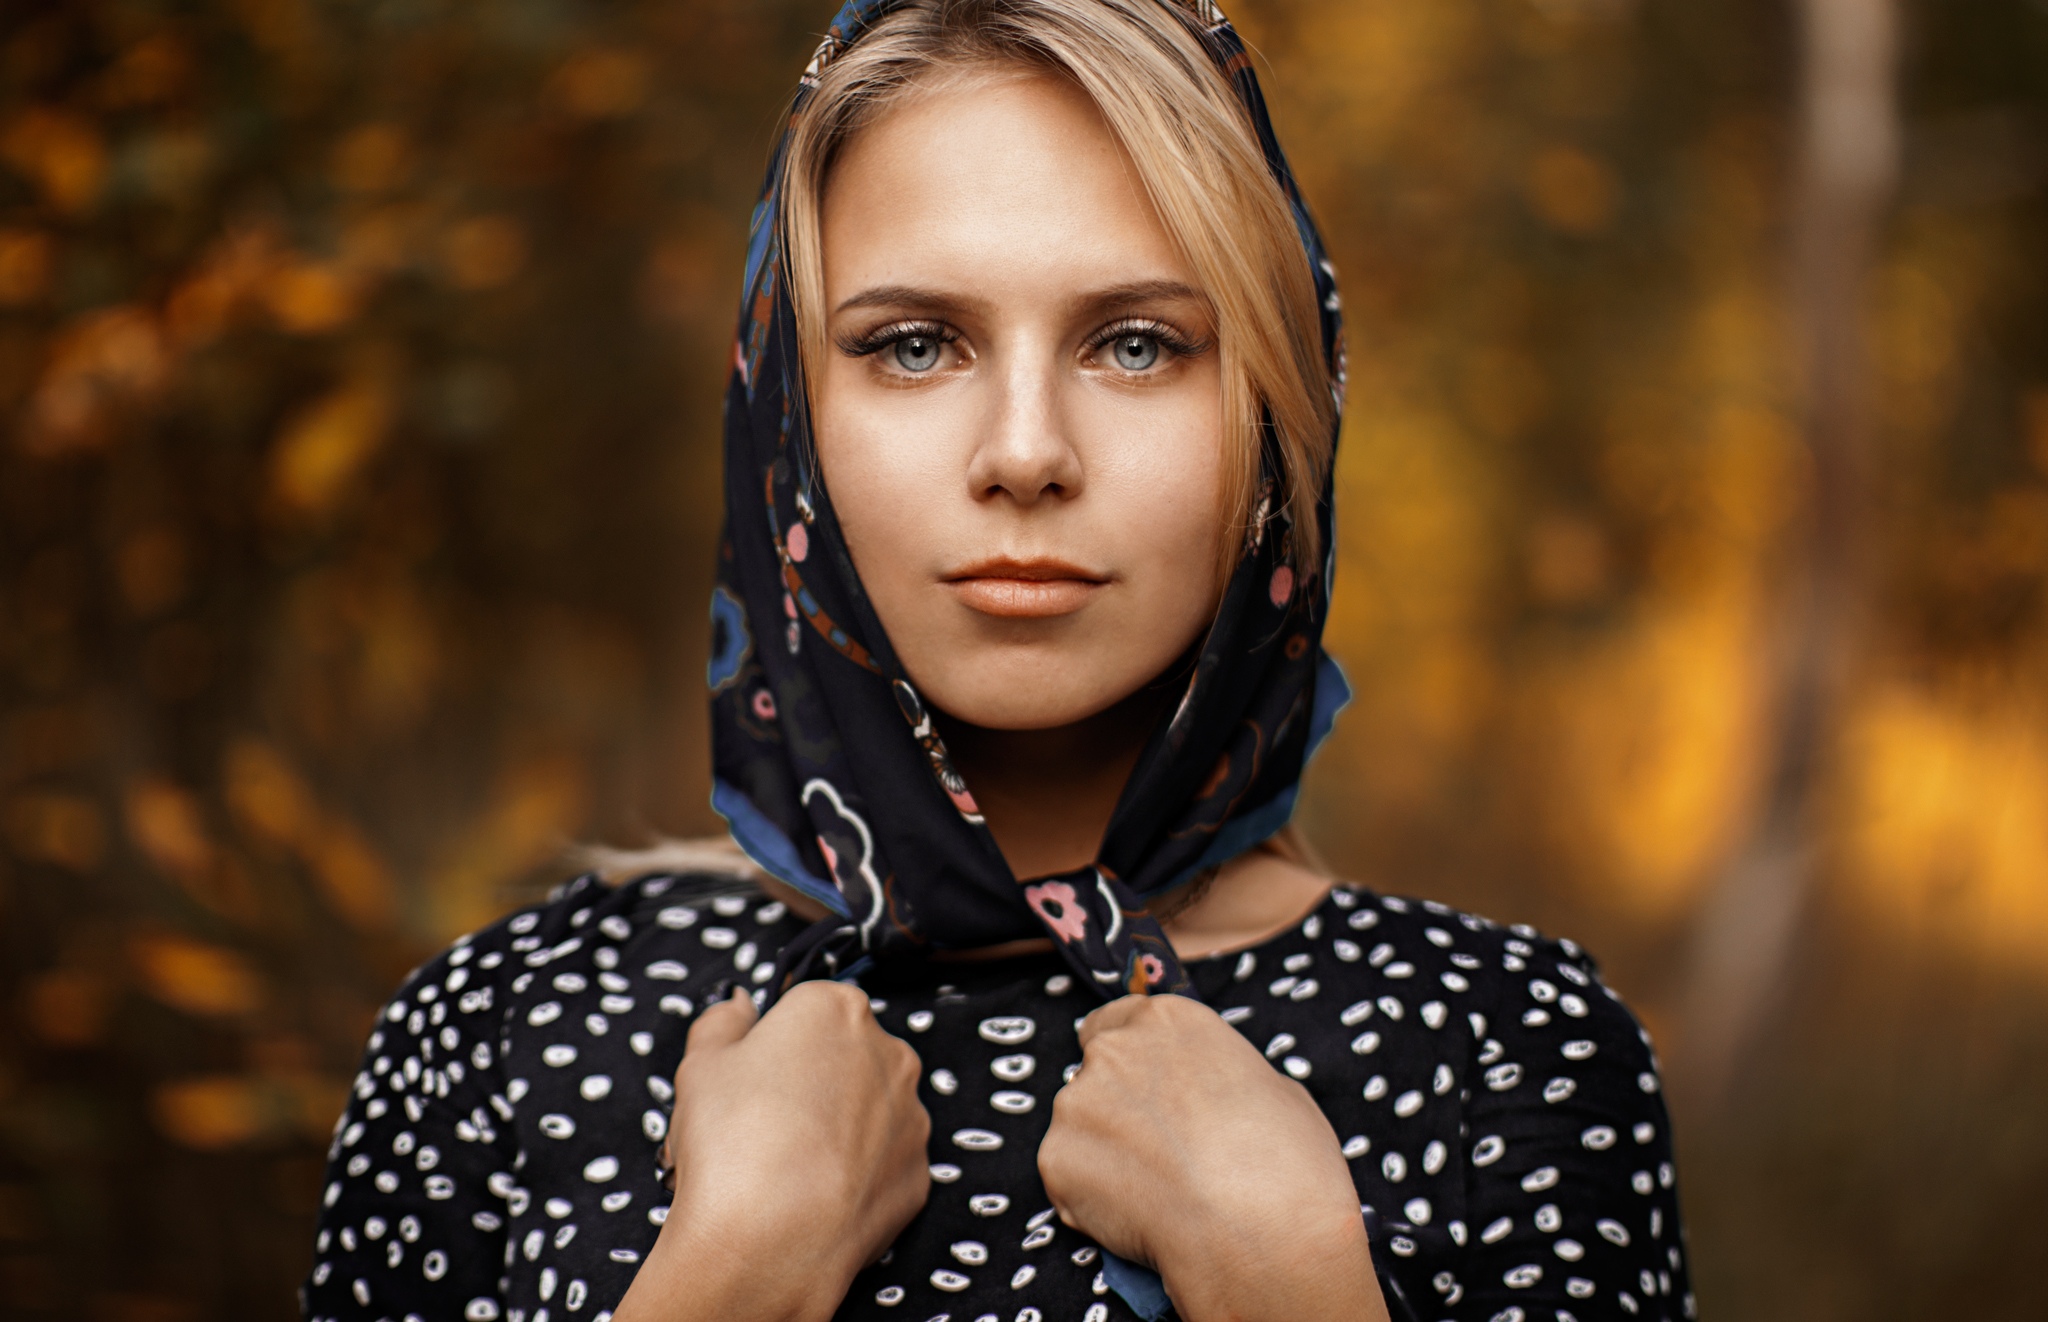 Ilya Baranov Women Model Portrait Outdoors Blonde Dress Depth Of Field Gray Eyes Face Women Outdoors 2048x1322